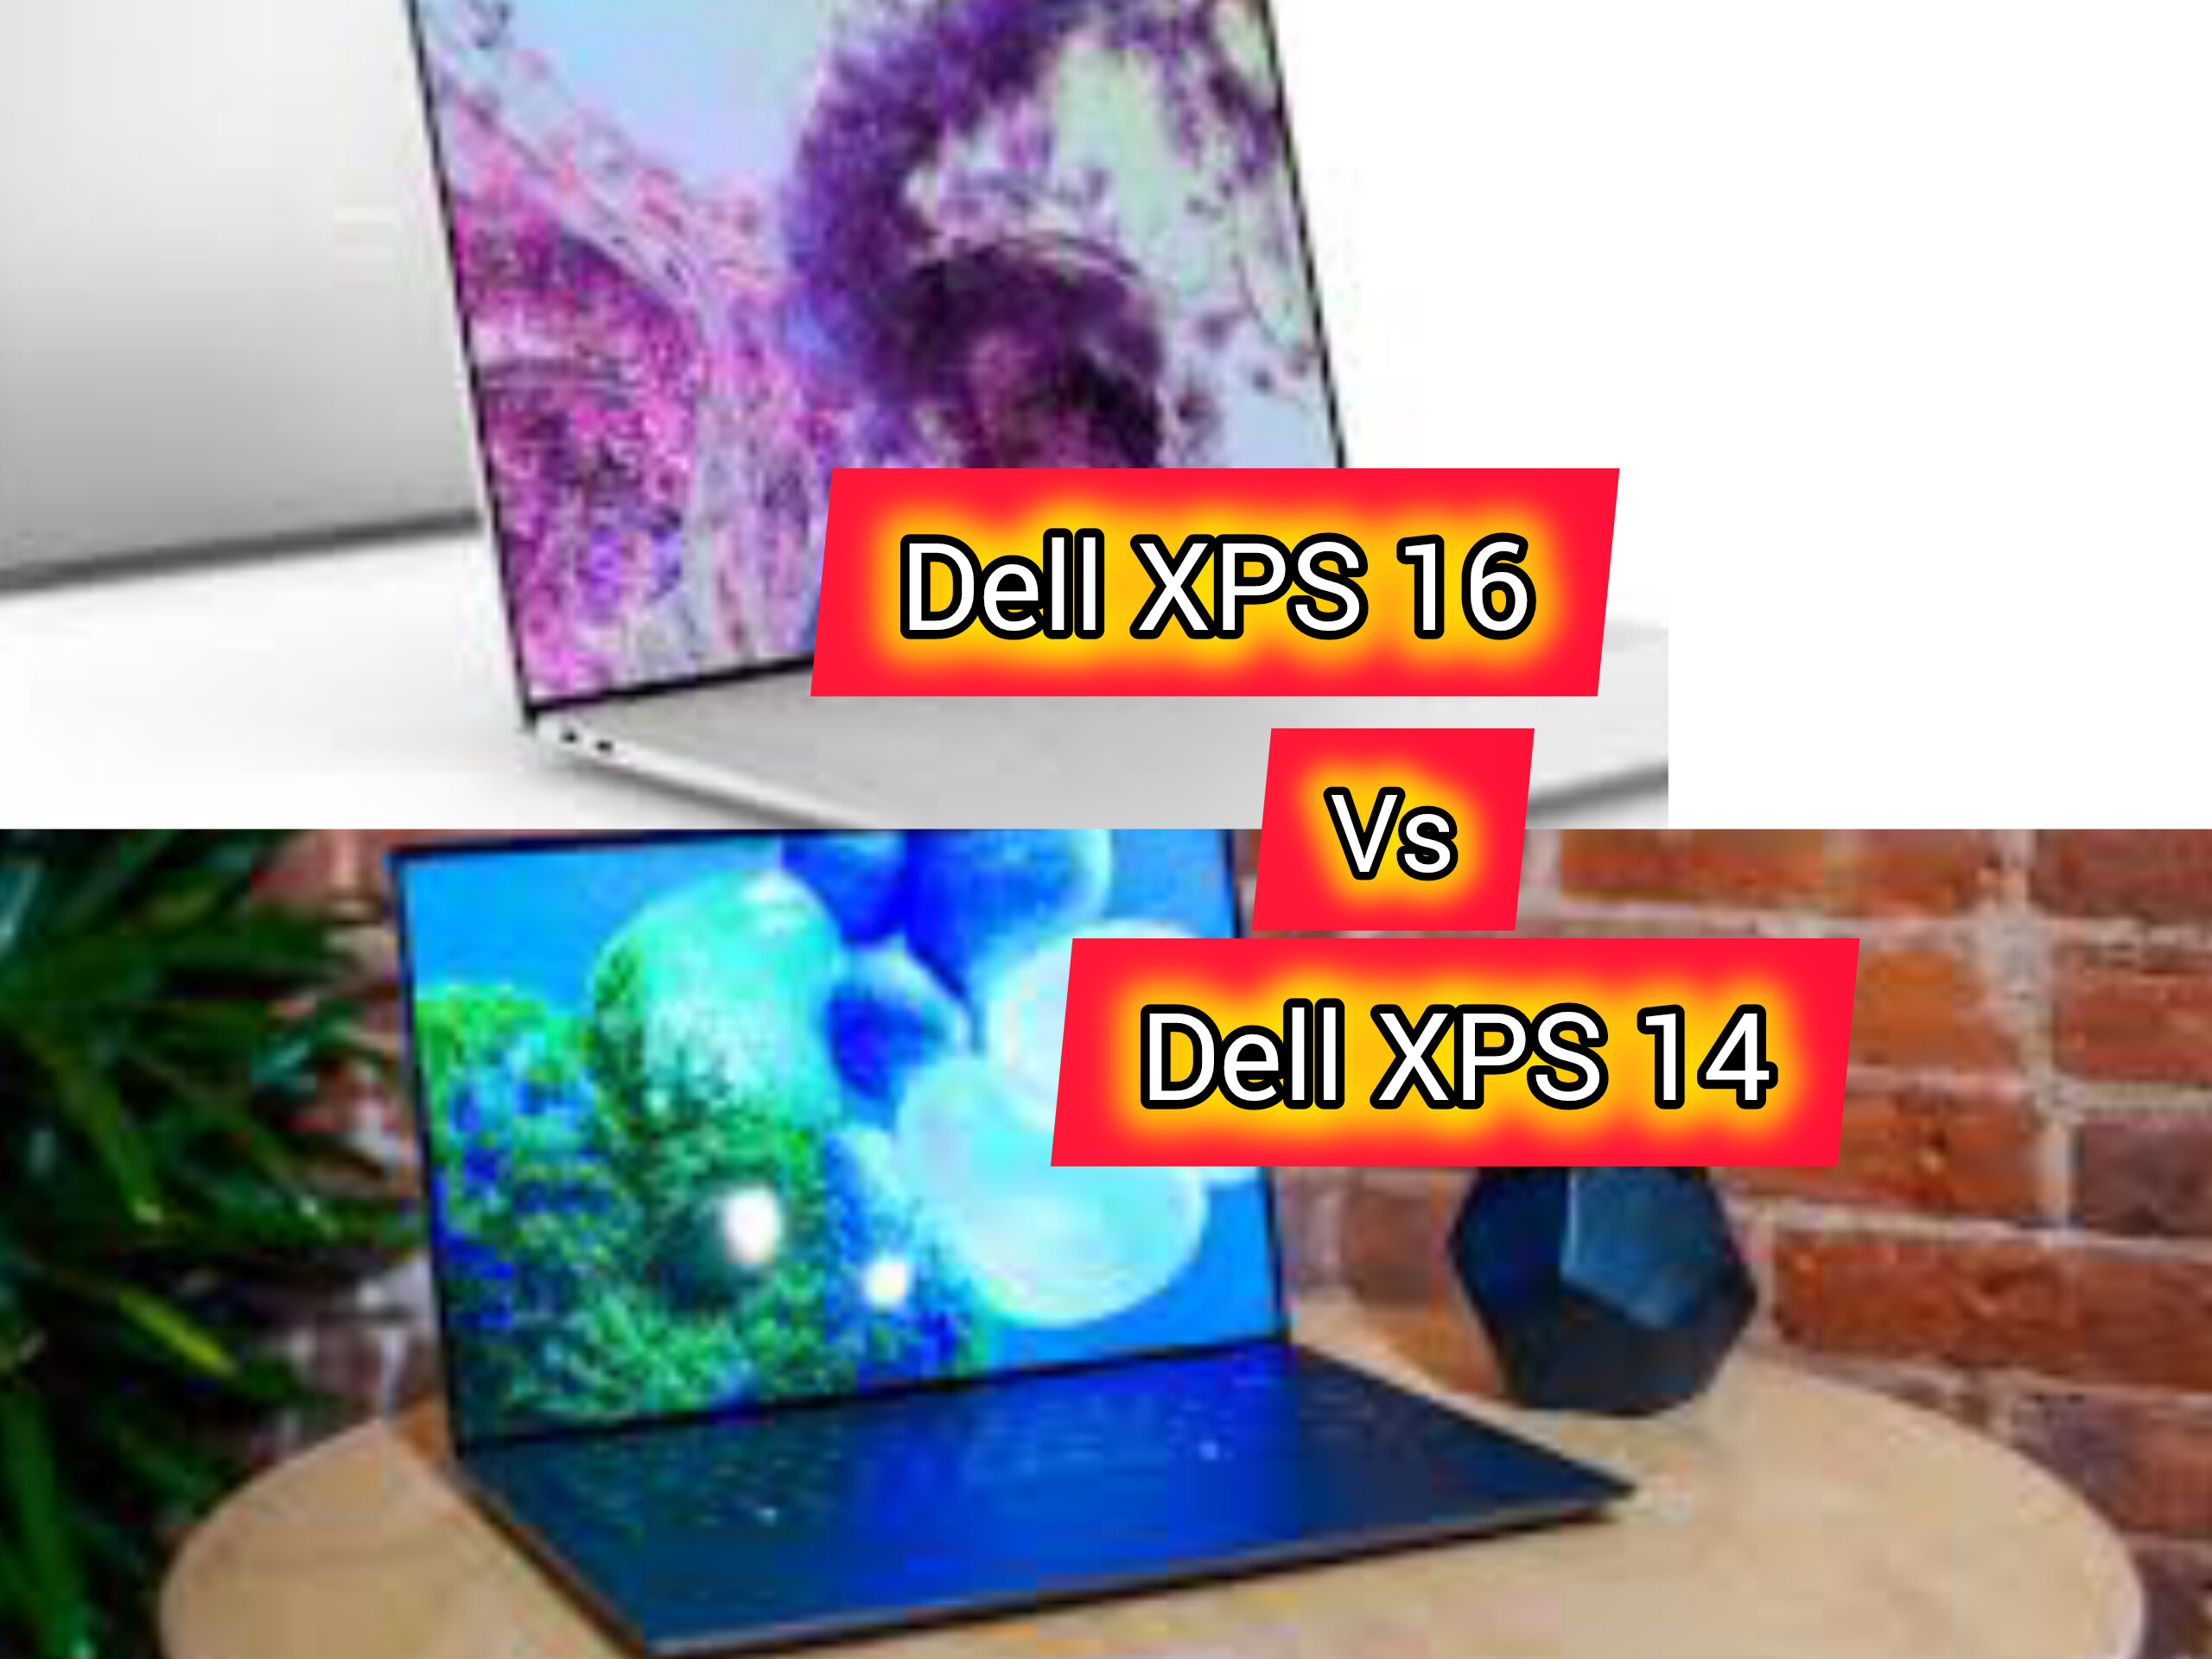 Perbandingan Dell XPS 14 Vs. Dell XPS 16,  Mana Yang Cocok? Cek Perbedaannya Dari Berbagai Sisi